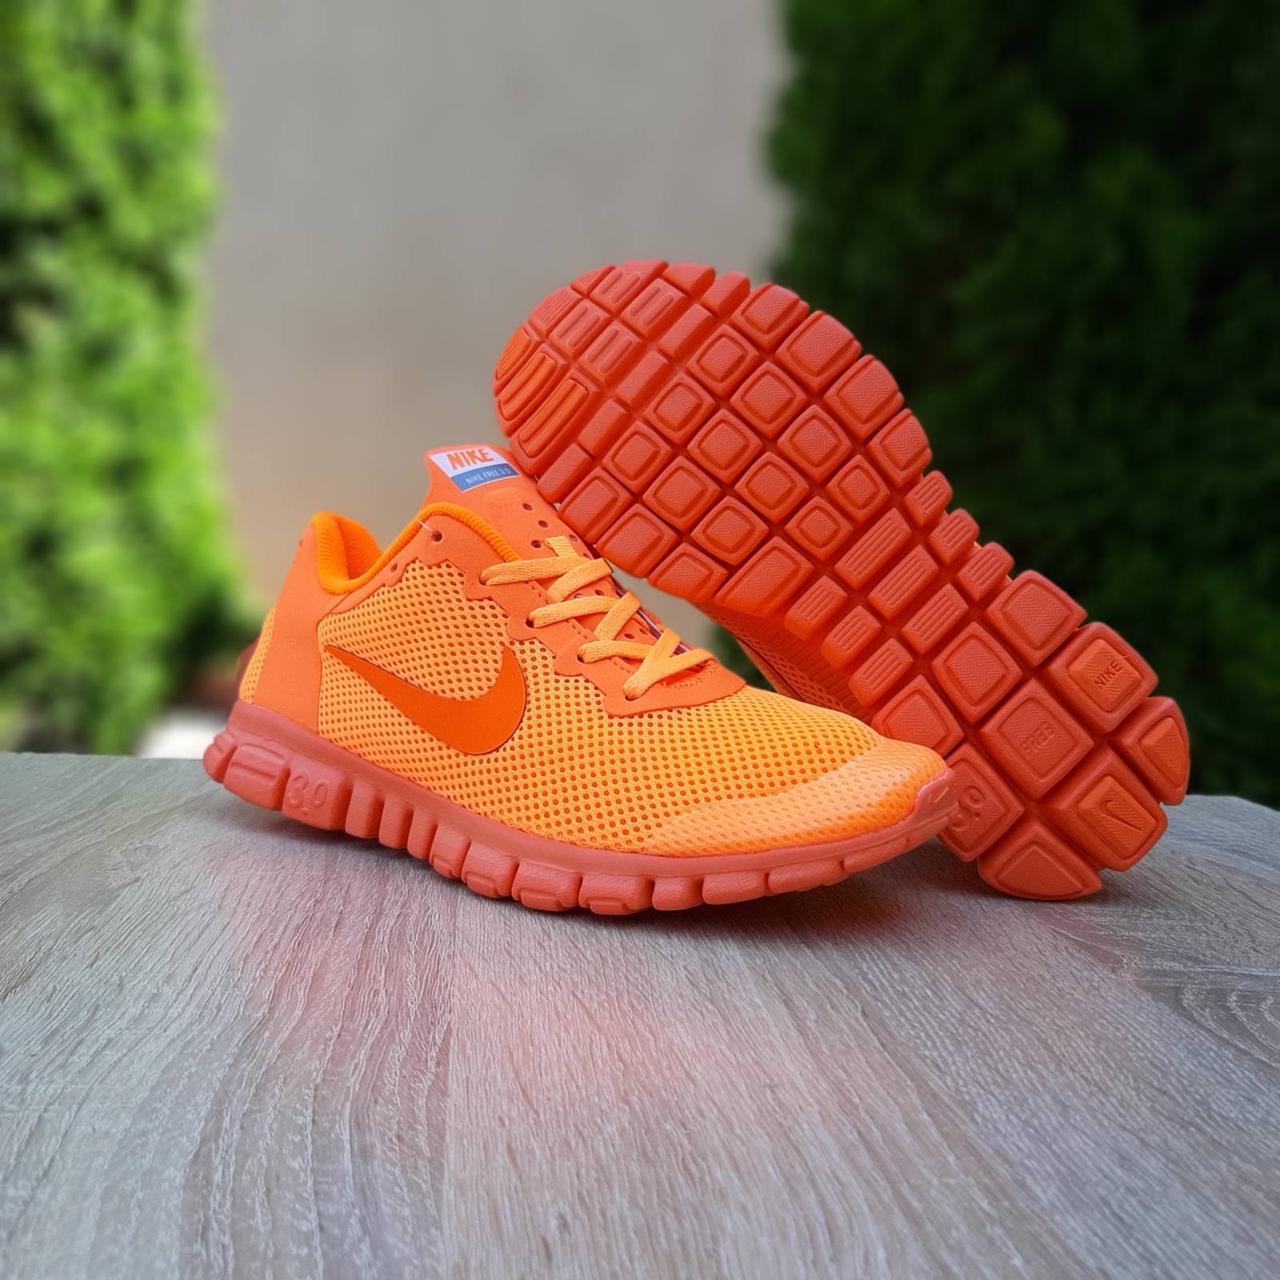 

Кроссовки женские Nike Free Run 3.0 оранжевые, Найк Фри Ран, дышащий материал, прошиты. Код OD-20132 42